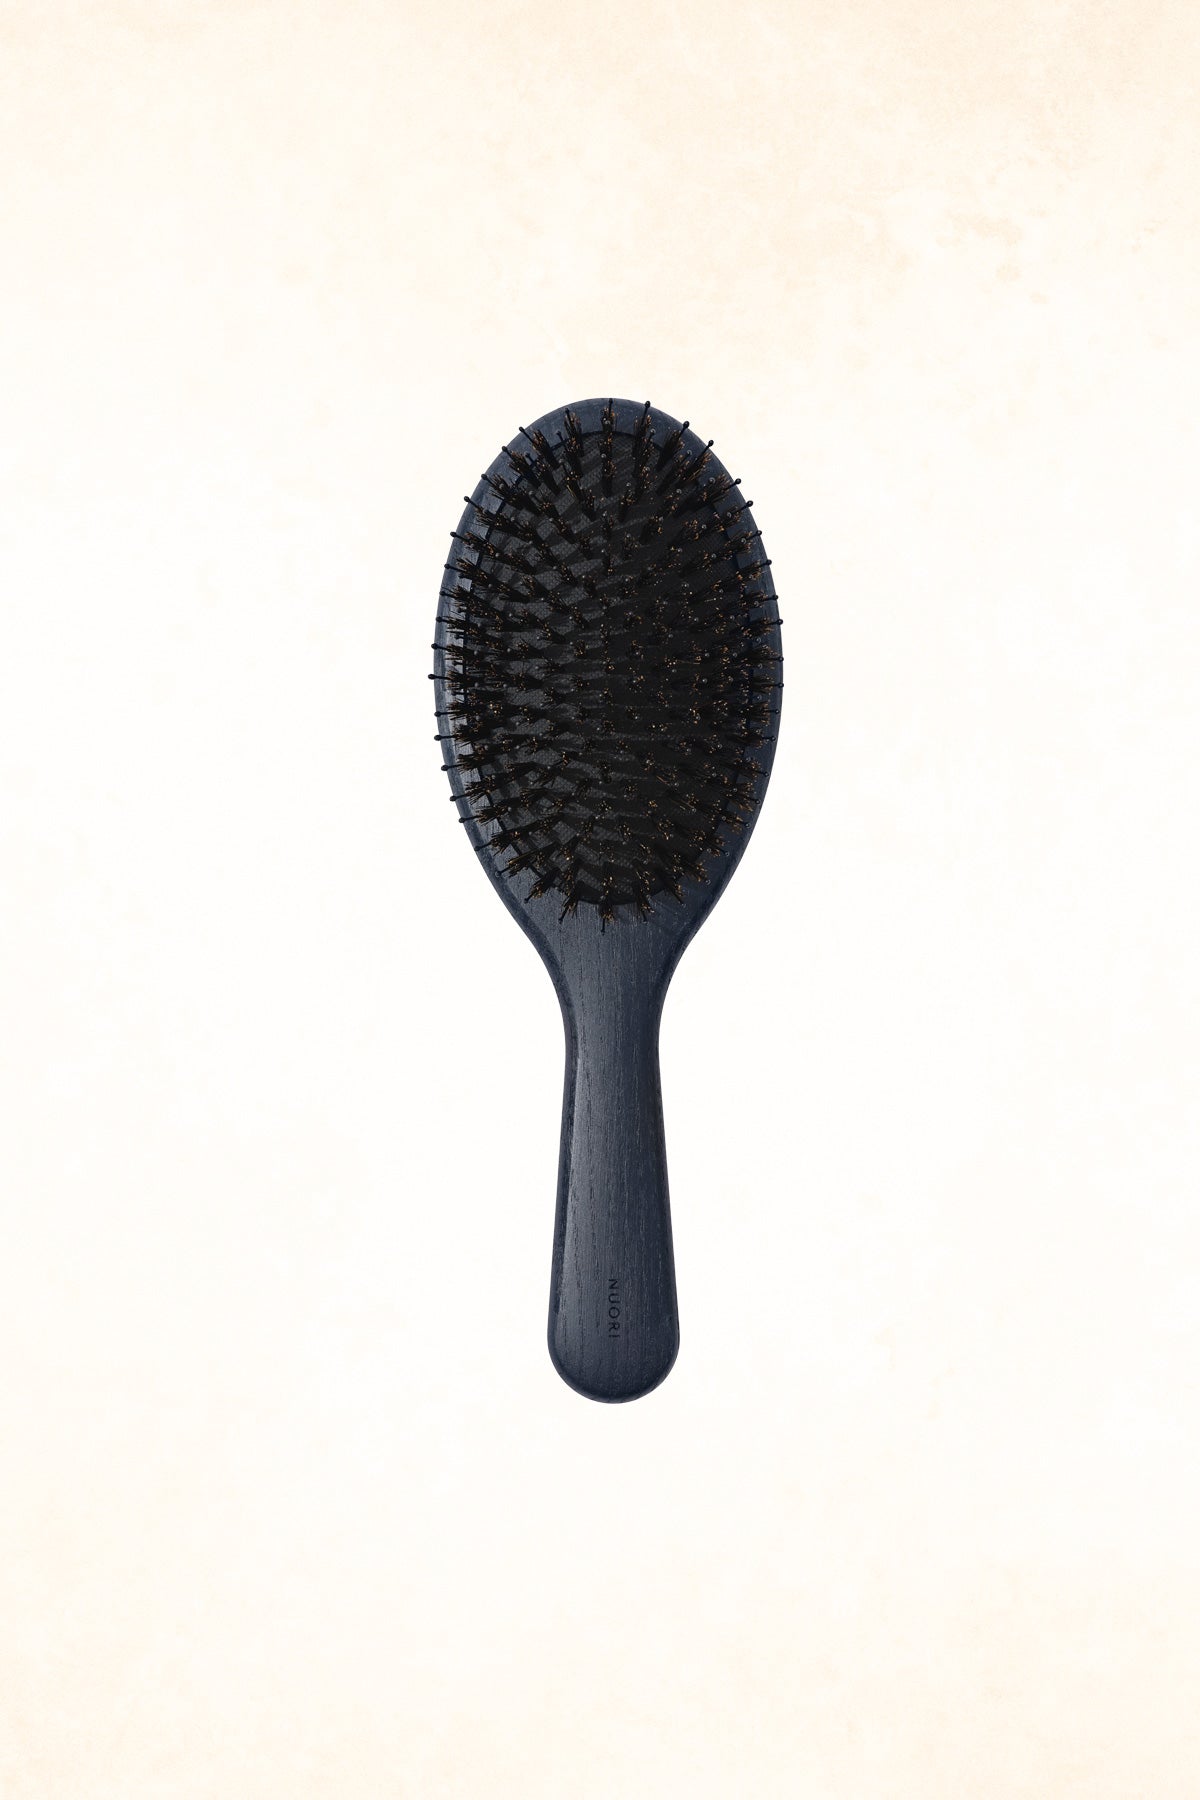 Nuori - Revitalizing Hair Brush Large - Ocean